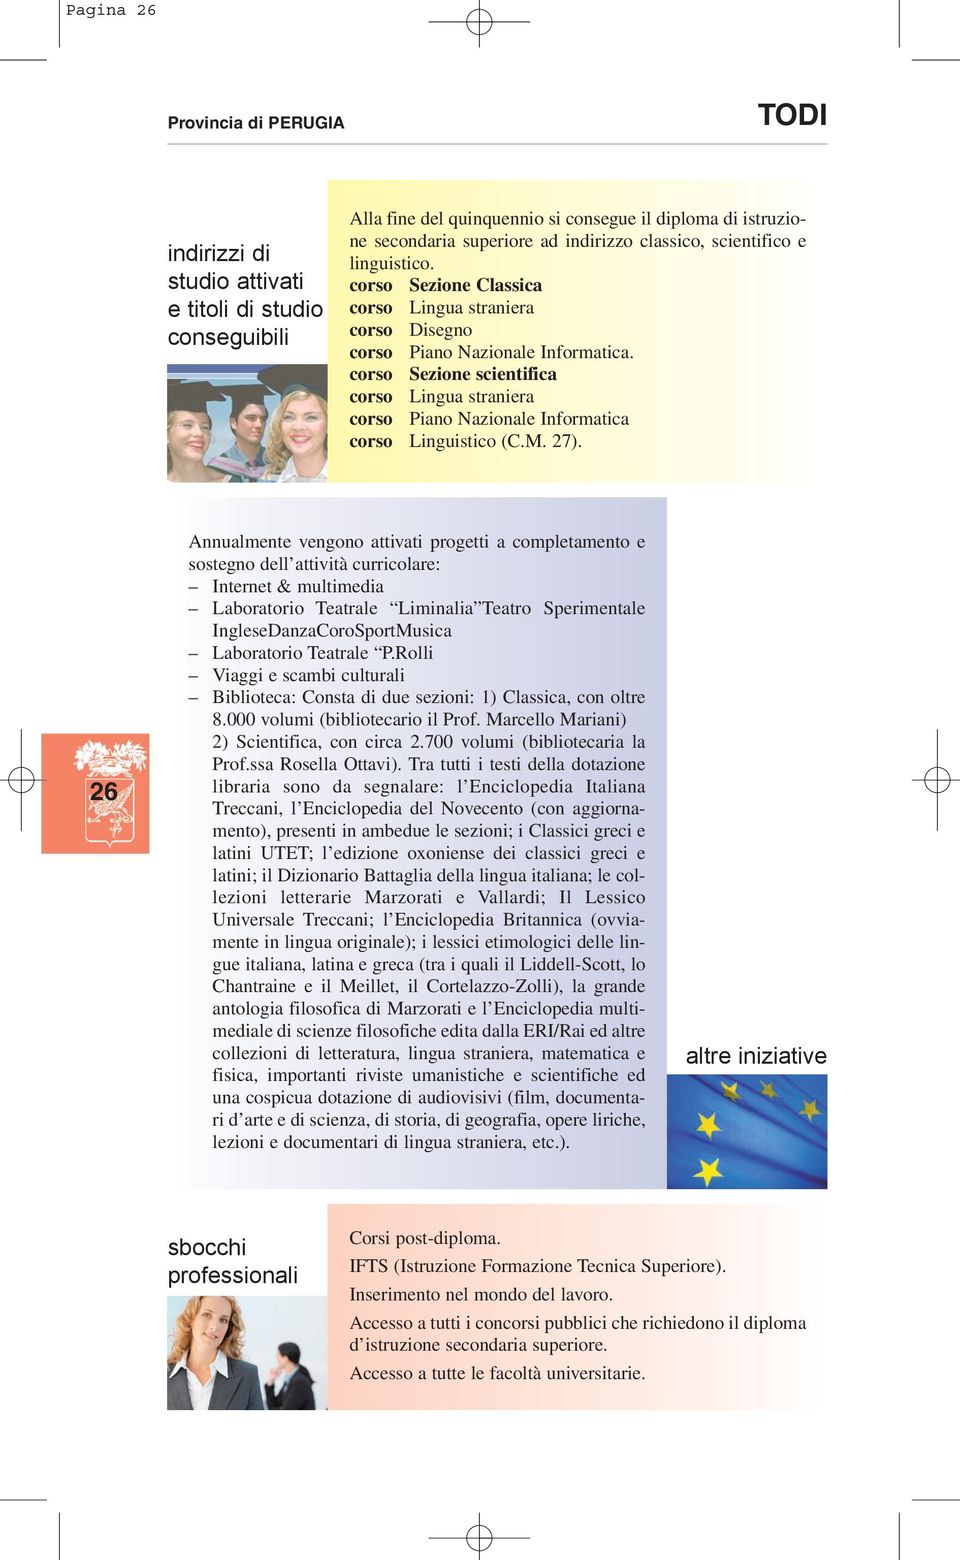 corso Sezione scientifica corso Lingua straniera corso Piano Nazionale Informatica corso Linguistico (C.M. 27).